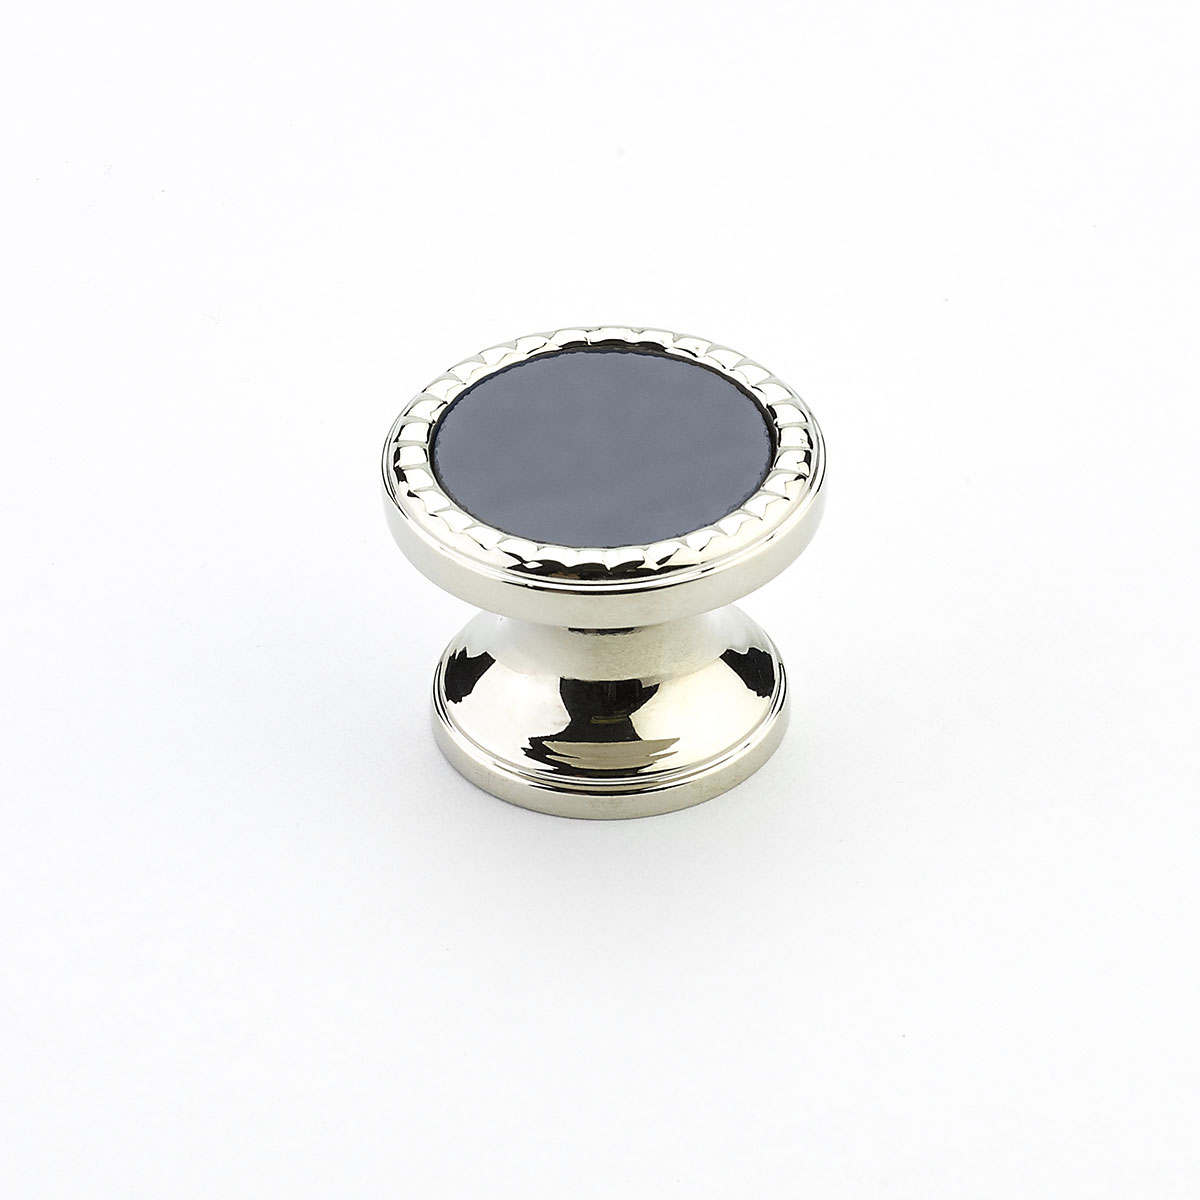 Schaub 20-PN-SG Round Knob, Polished Nickel,Ã‚Â  Slate Grey Glass Inlay, 1-1/4" Dia - Polished Nickel